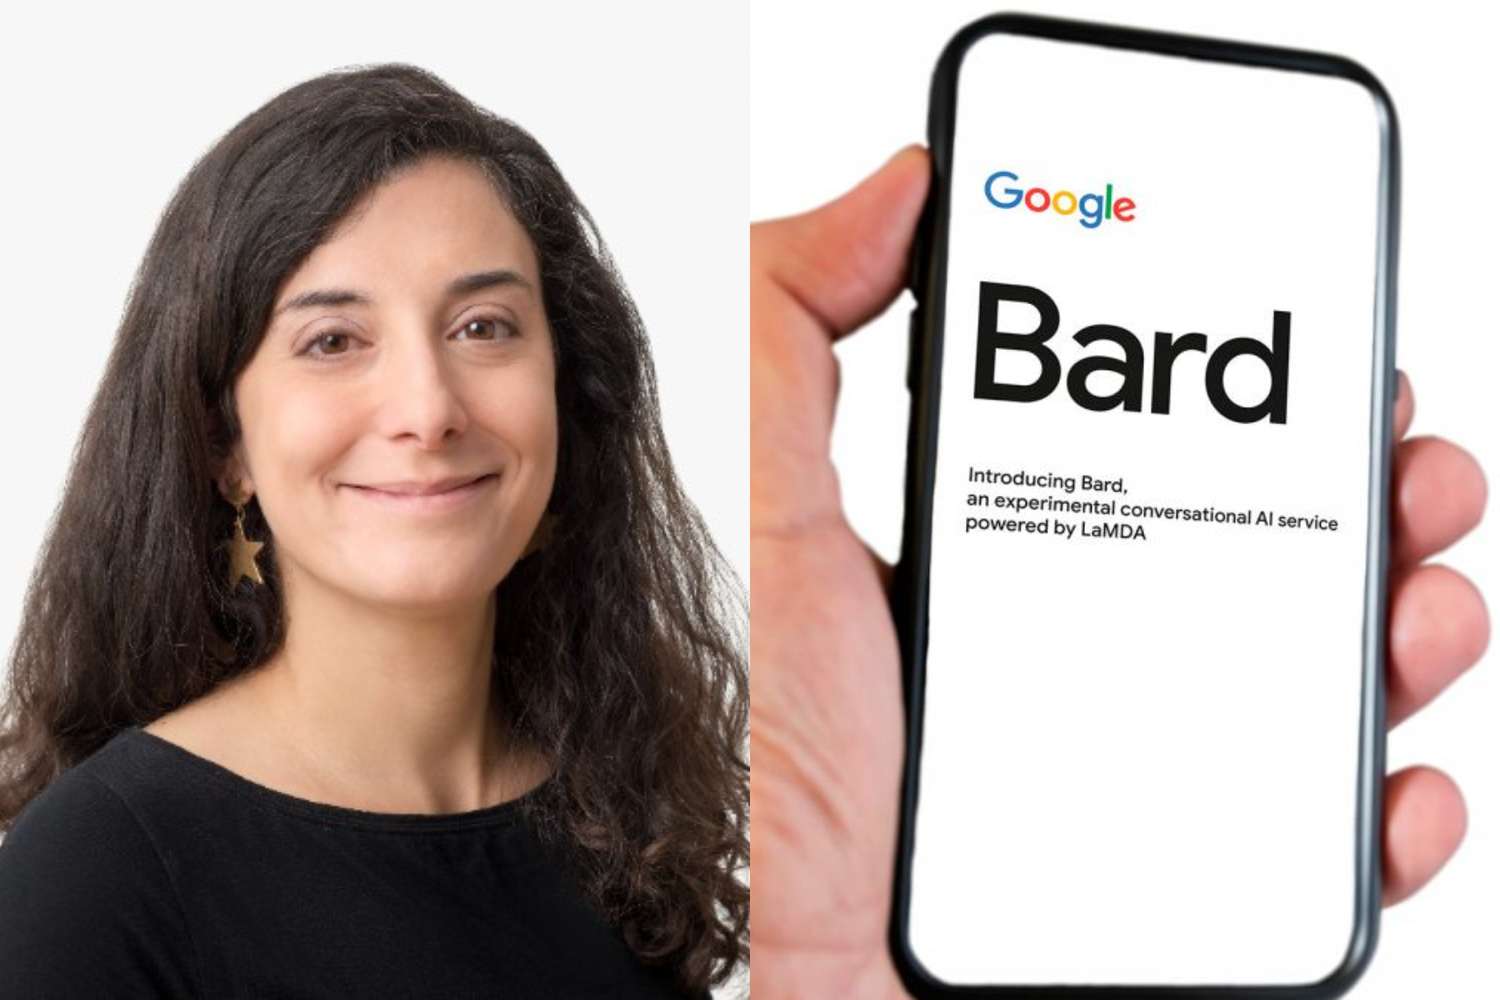 Una bonaerense que trabaja en Google explicó cómo es Bard, el nuevo "ChatGPT" en español lanzado en Argentina